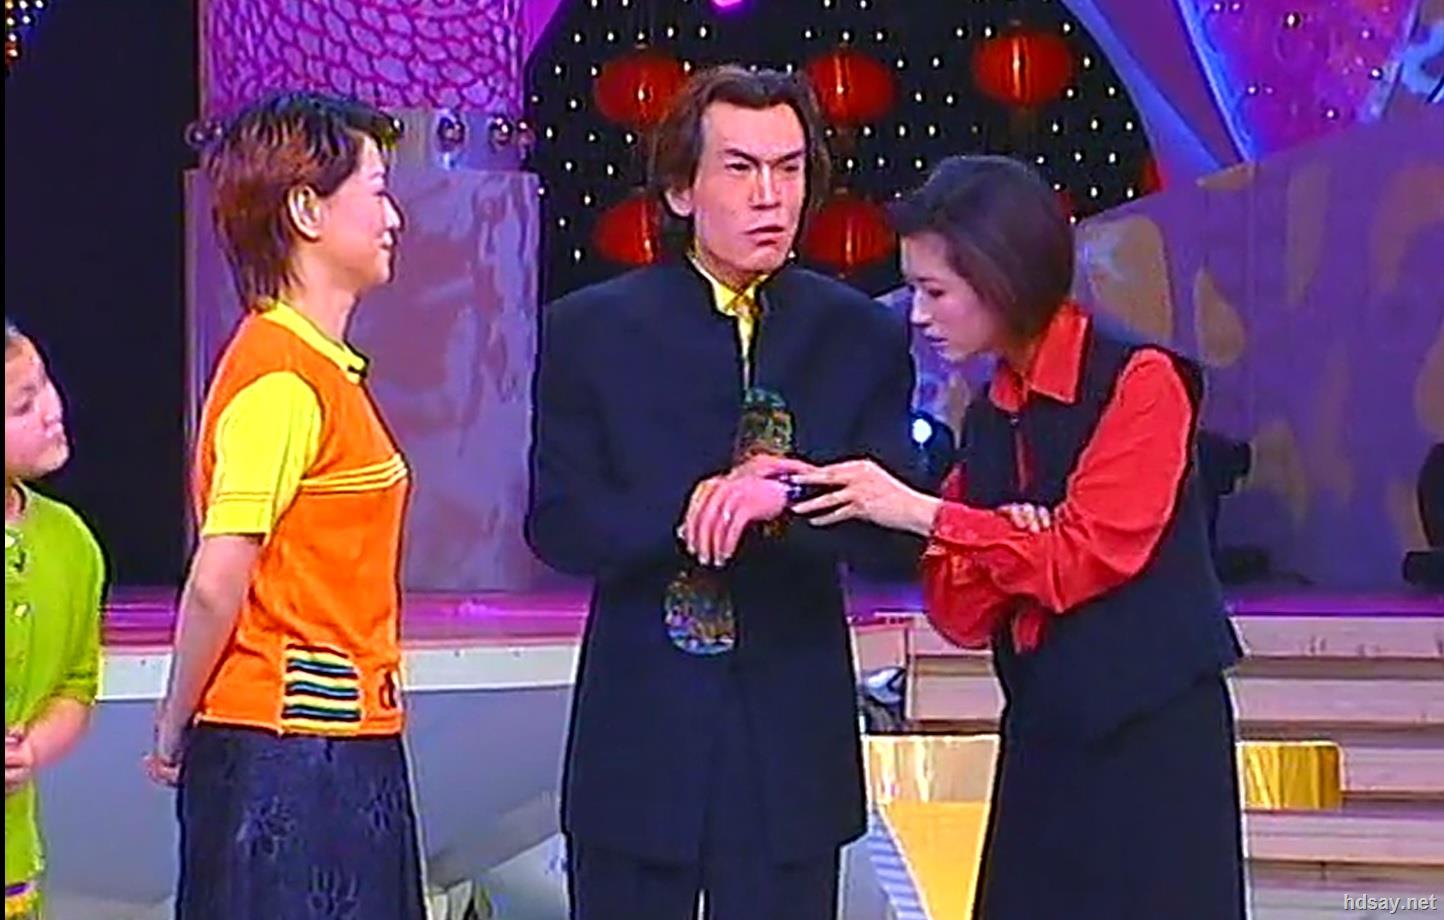 2002年中央电视台春节联欢晚会